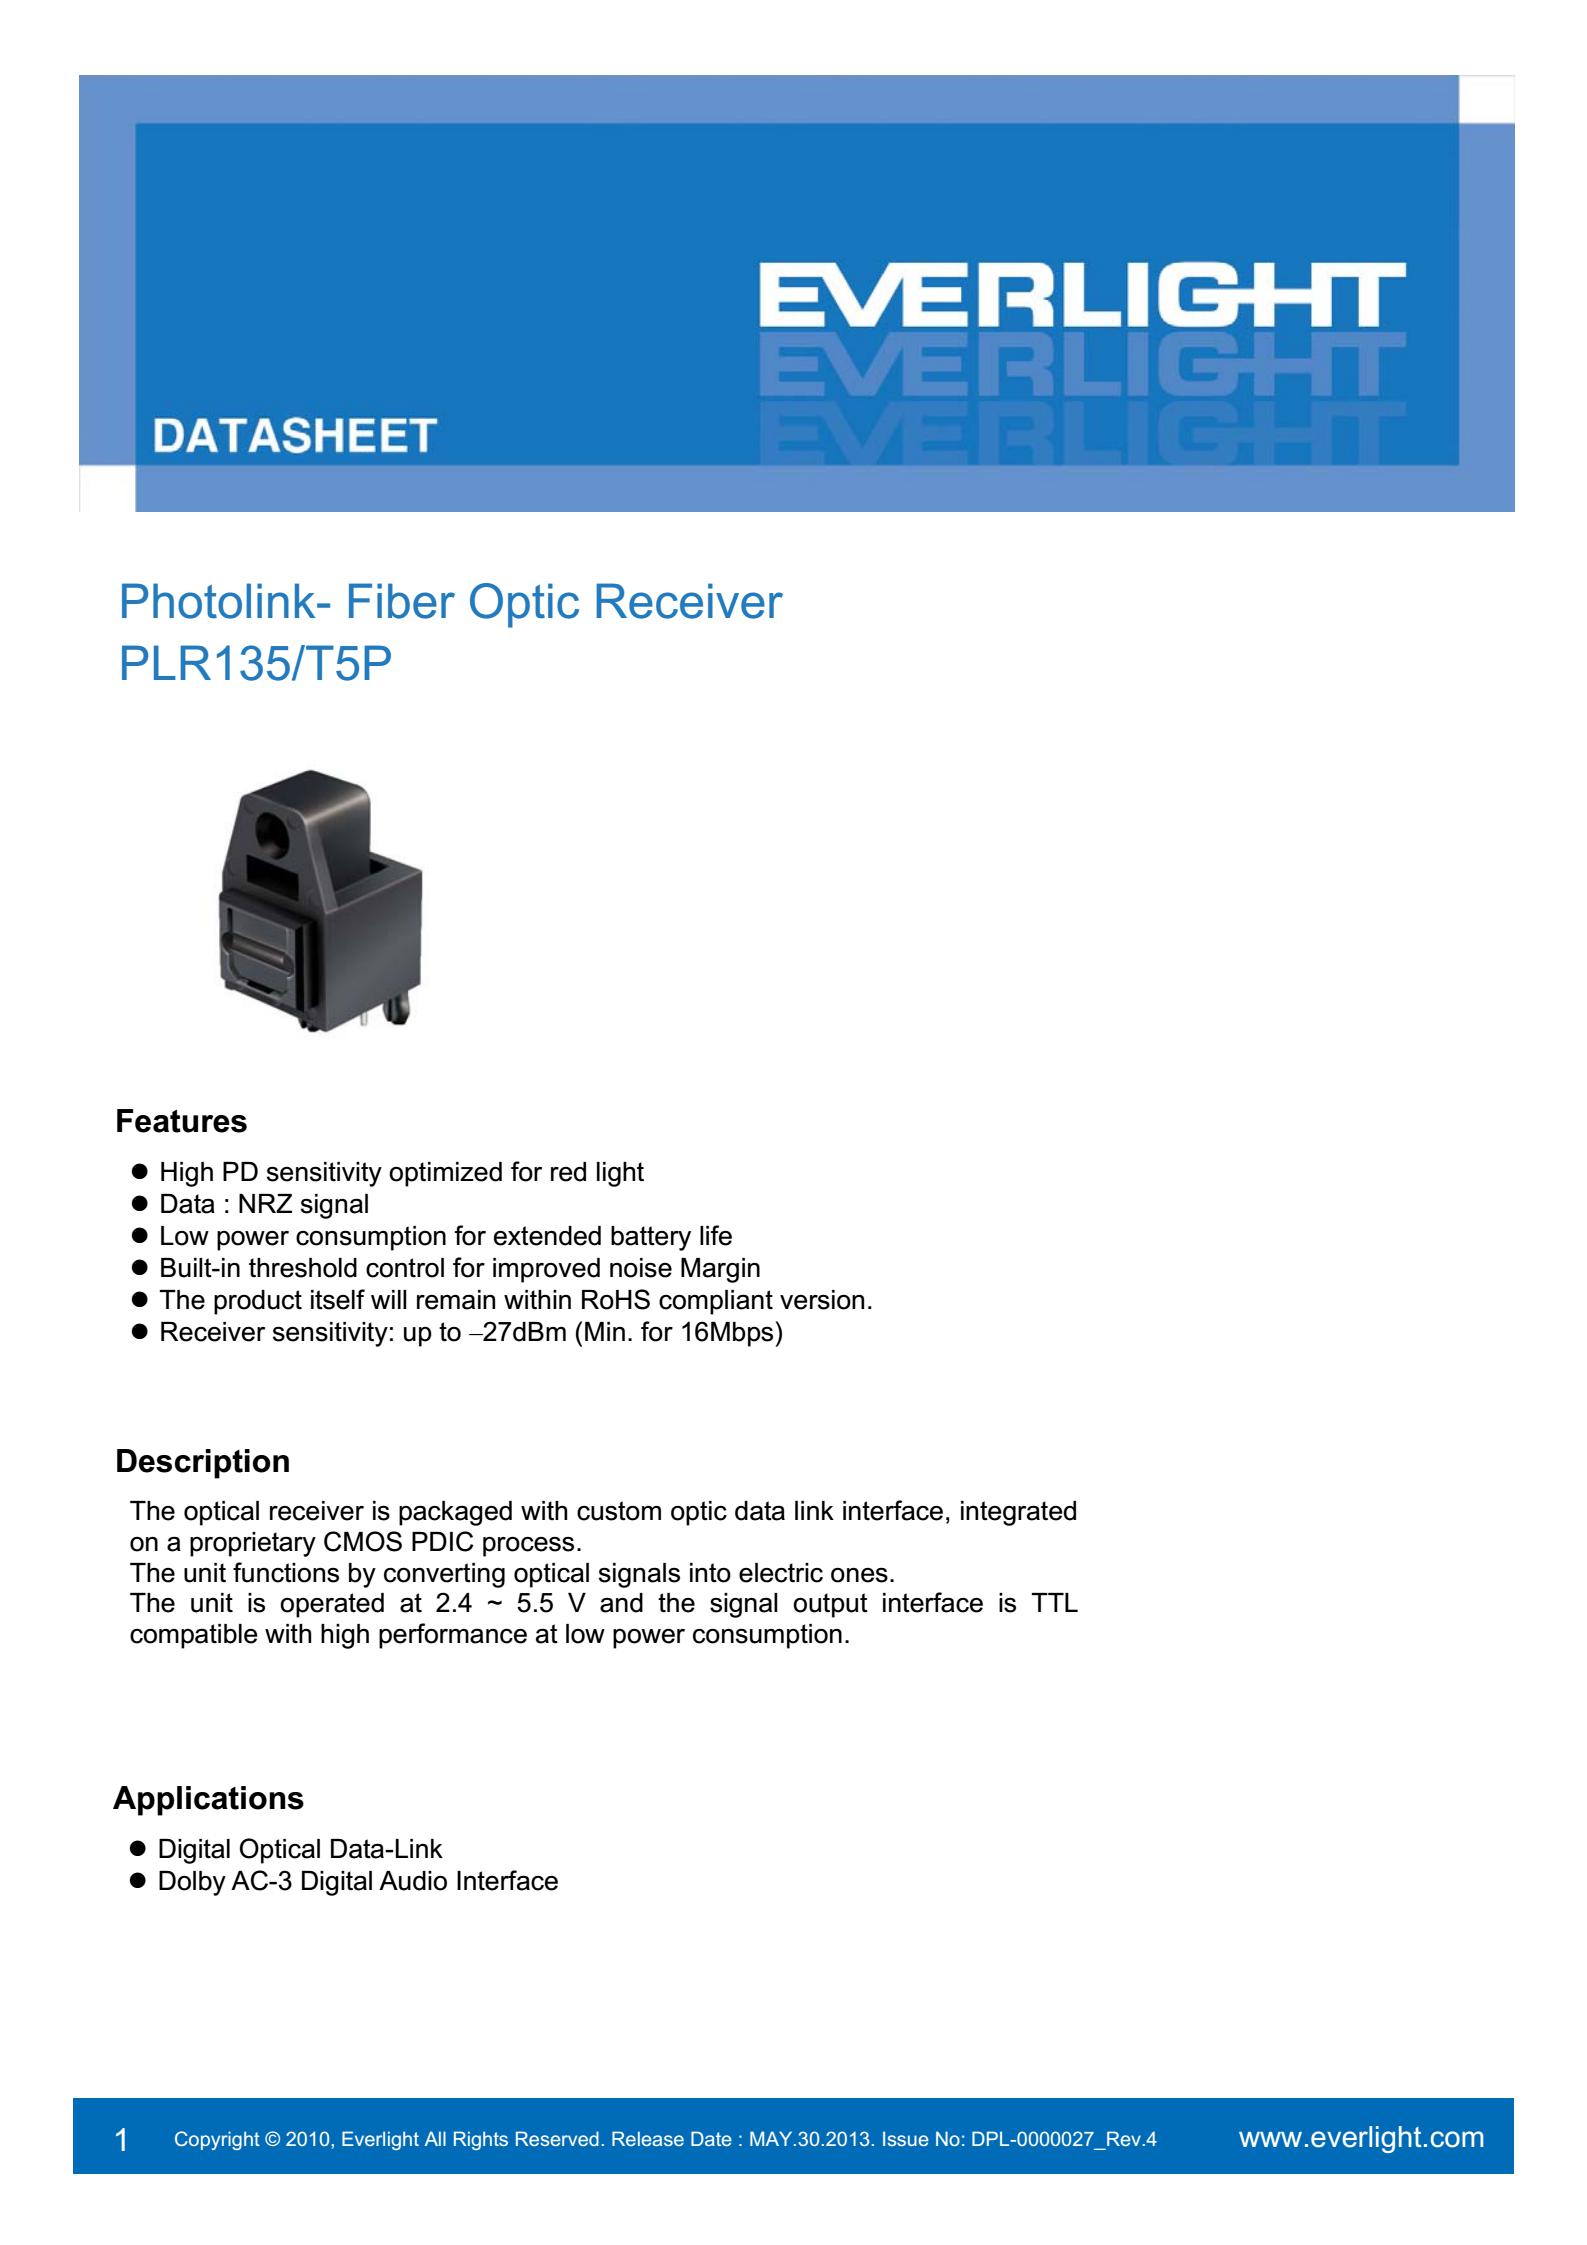 everlight PLR135/T5P Photolink-Fiber Optic Receiver Datasheet